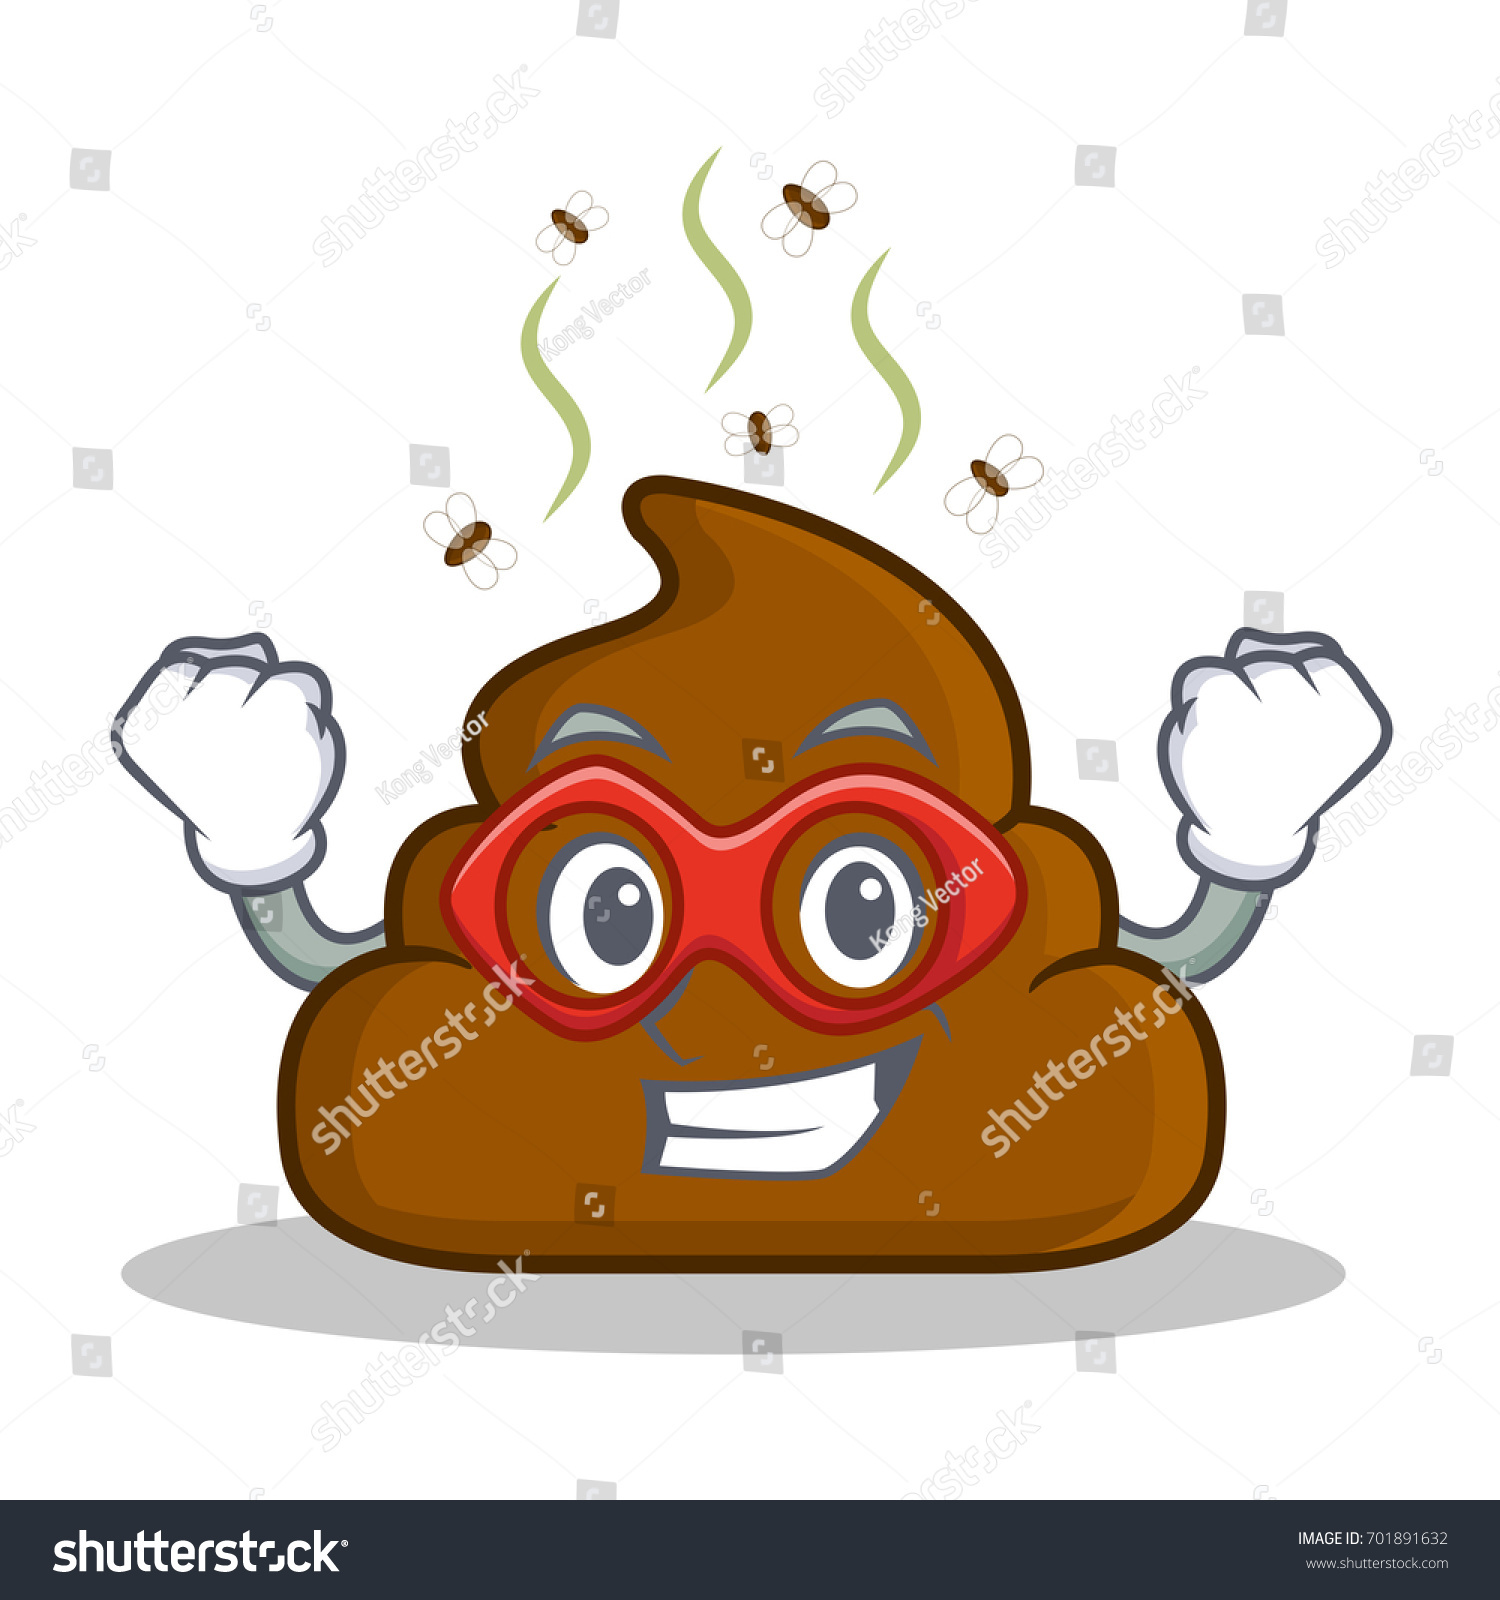 Super Hero Poop Emoticon Character Cartoon Royalty Free Stock Vector